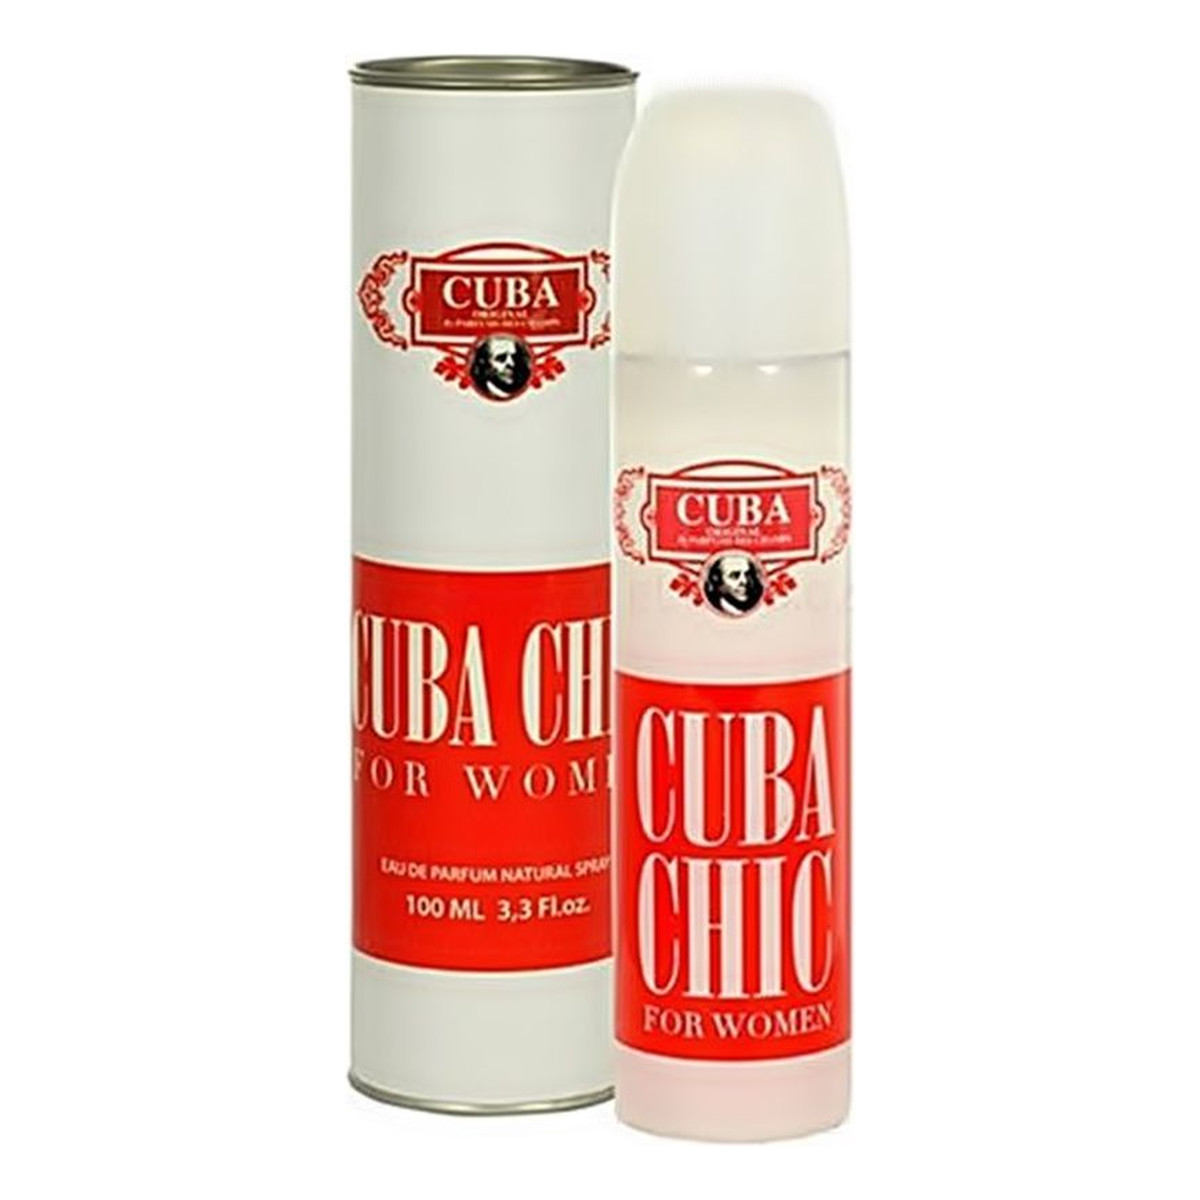 Cuba Original Cuba Chic Woda perfumowana spray 100ml